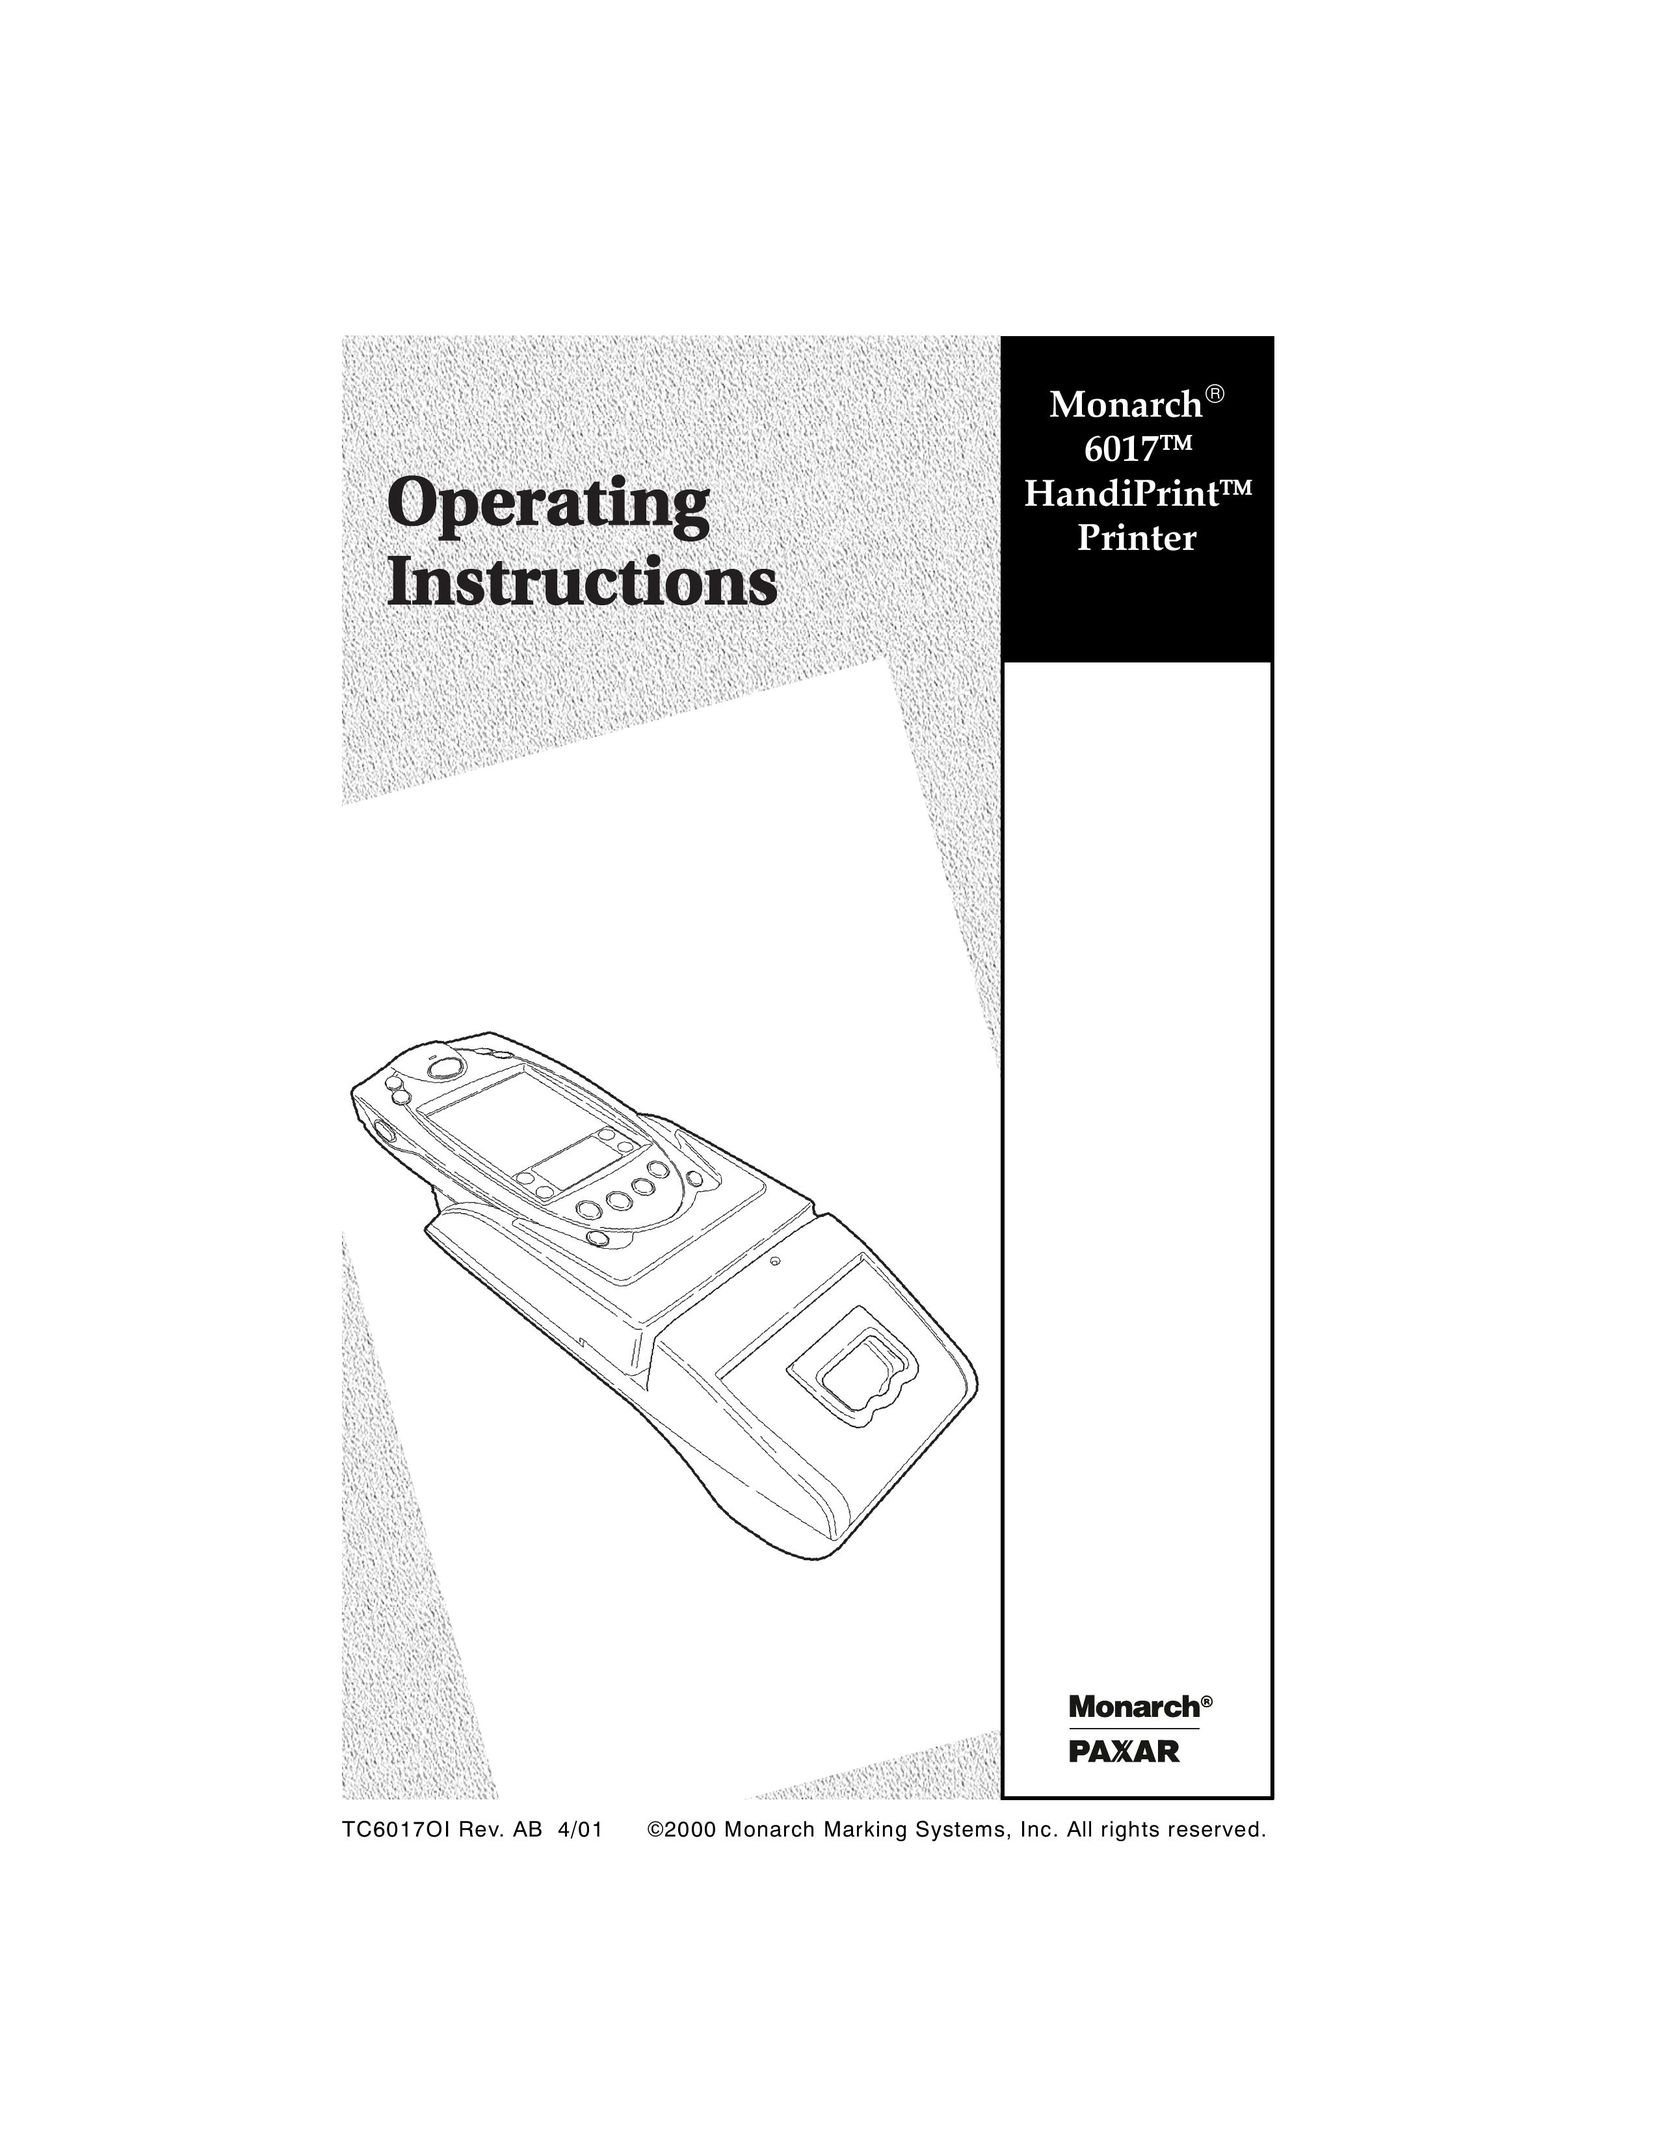 Paxar 6017 Printer User Manual